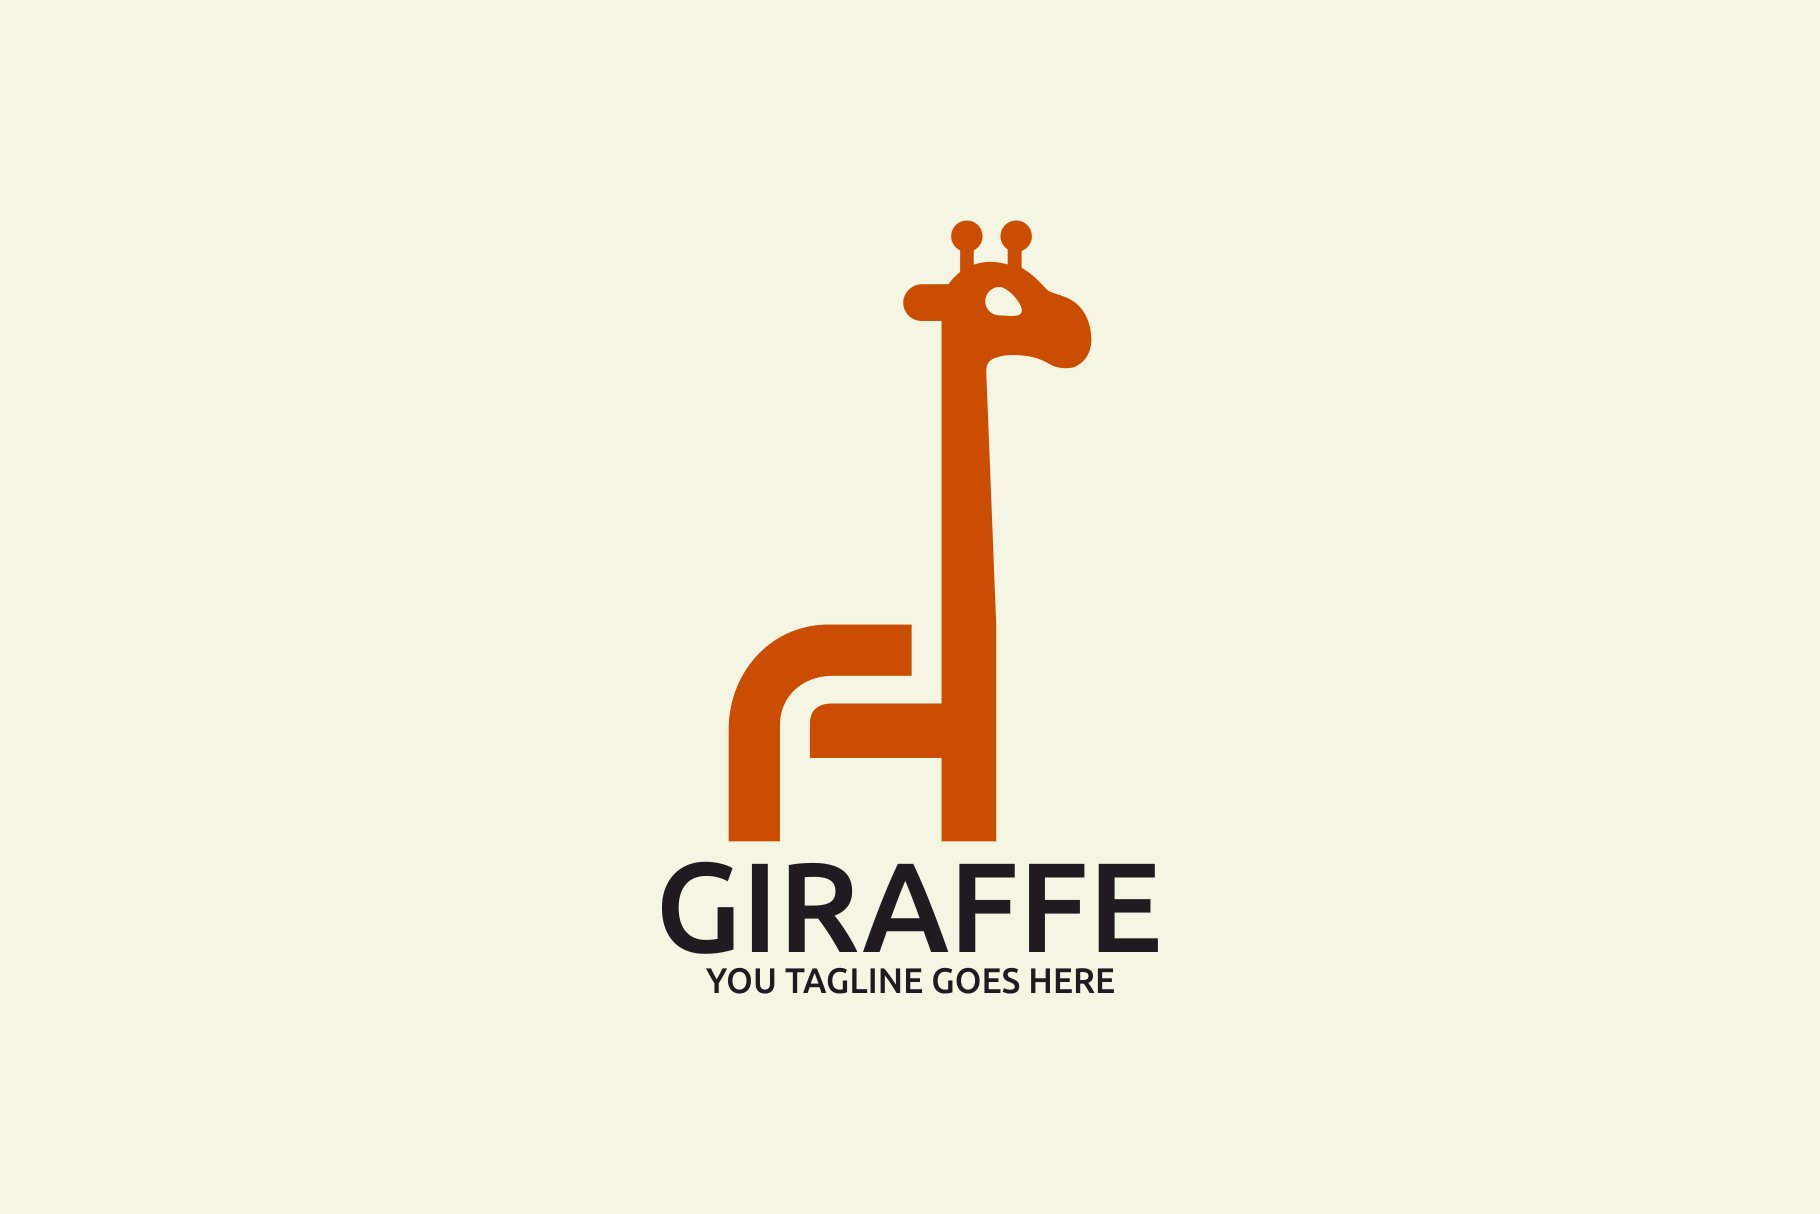 Giraffe Logo cover image.